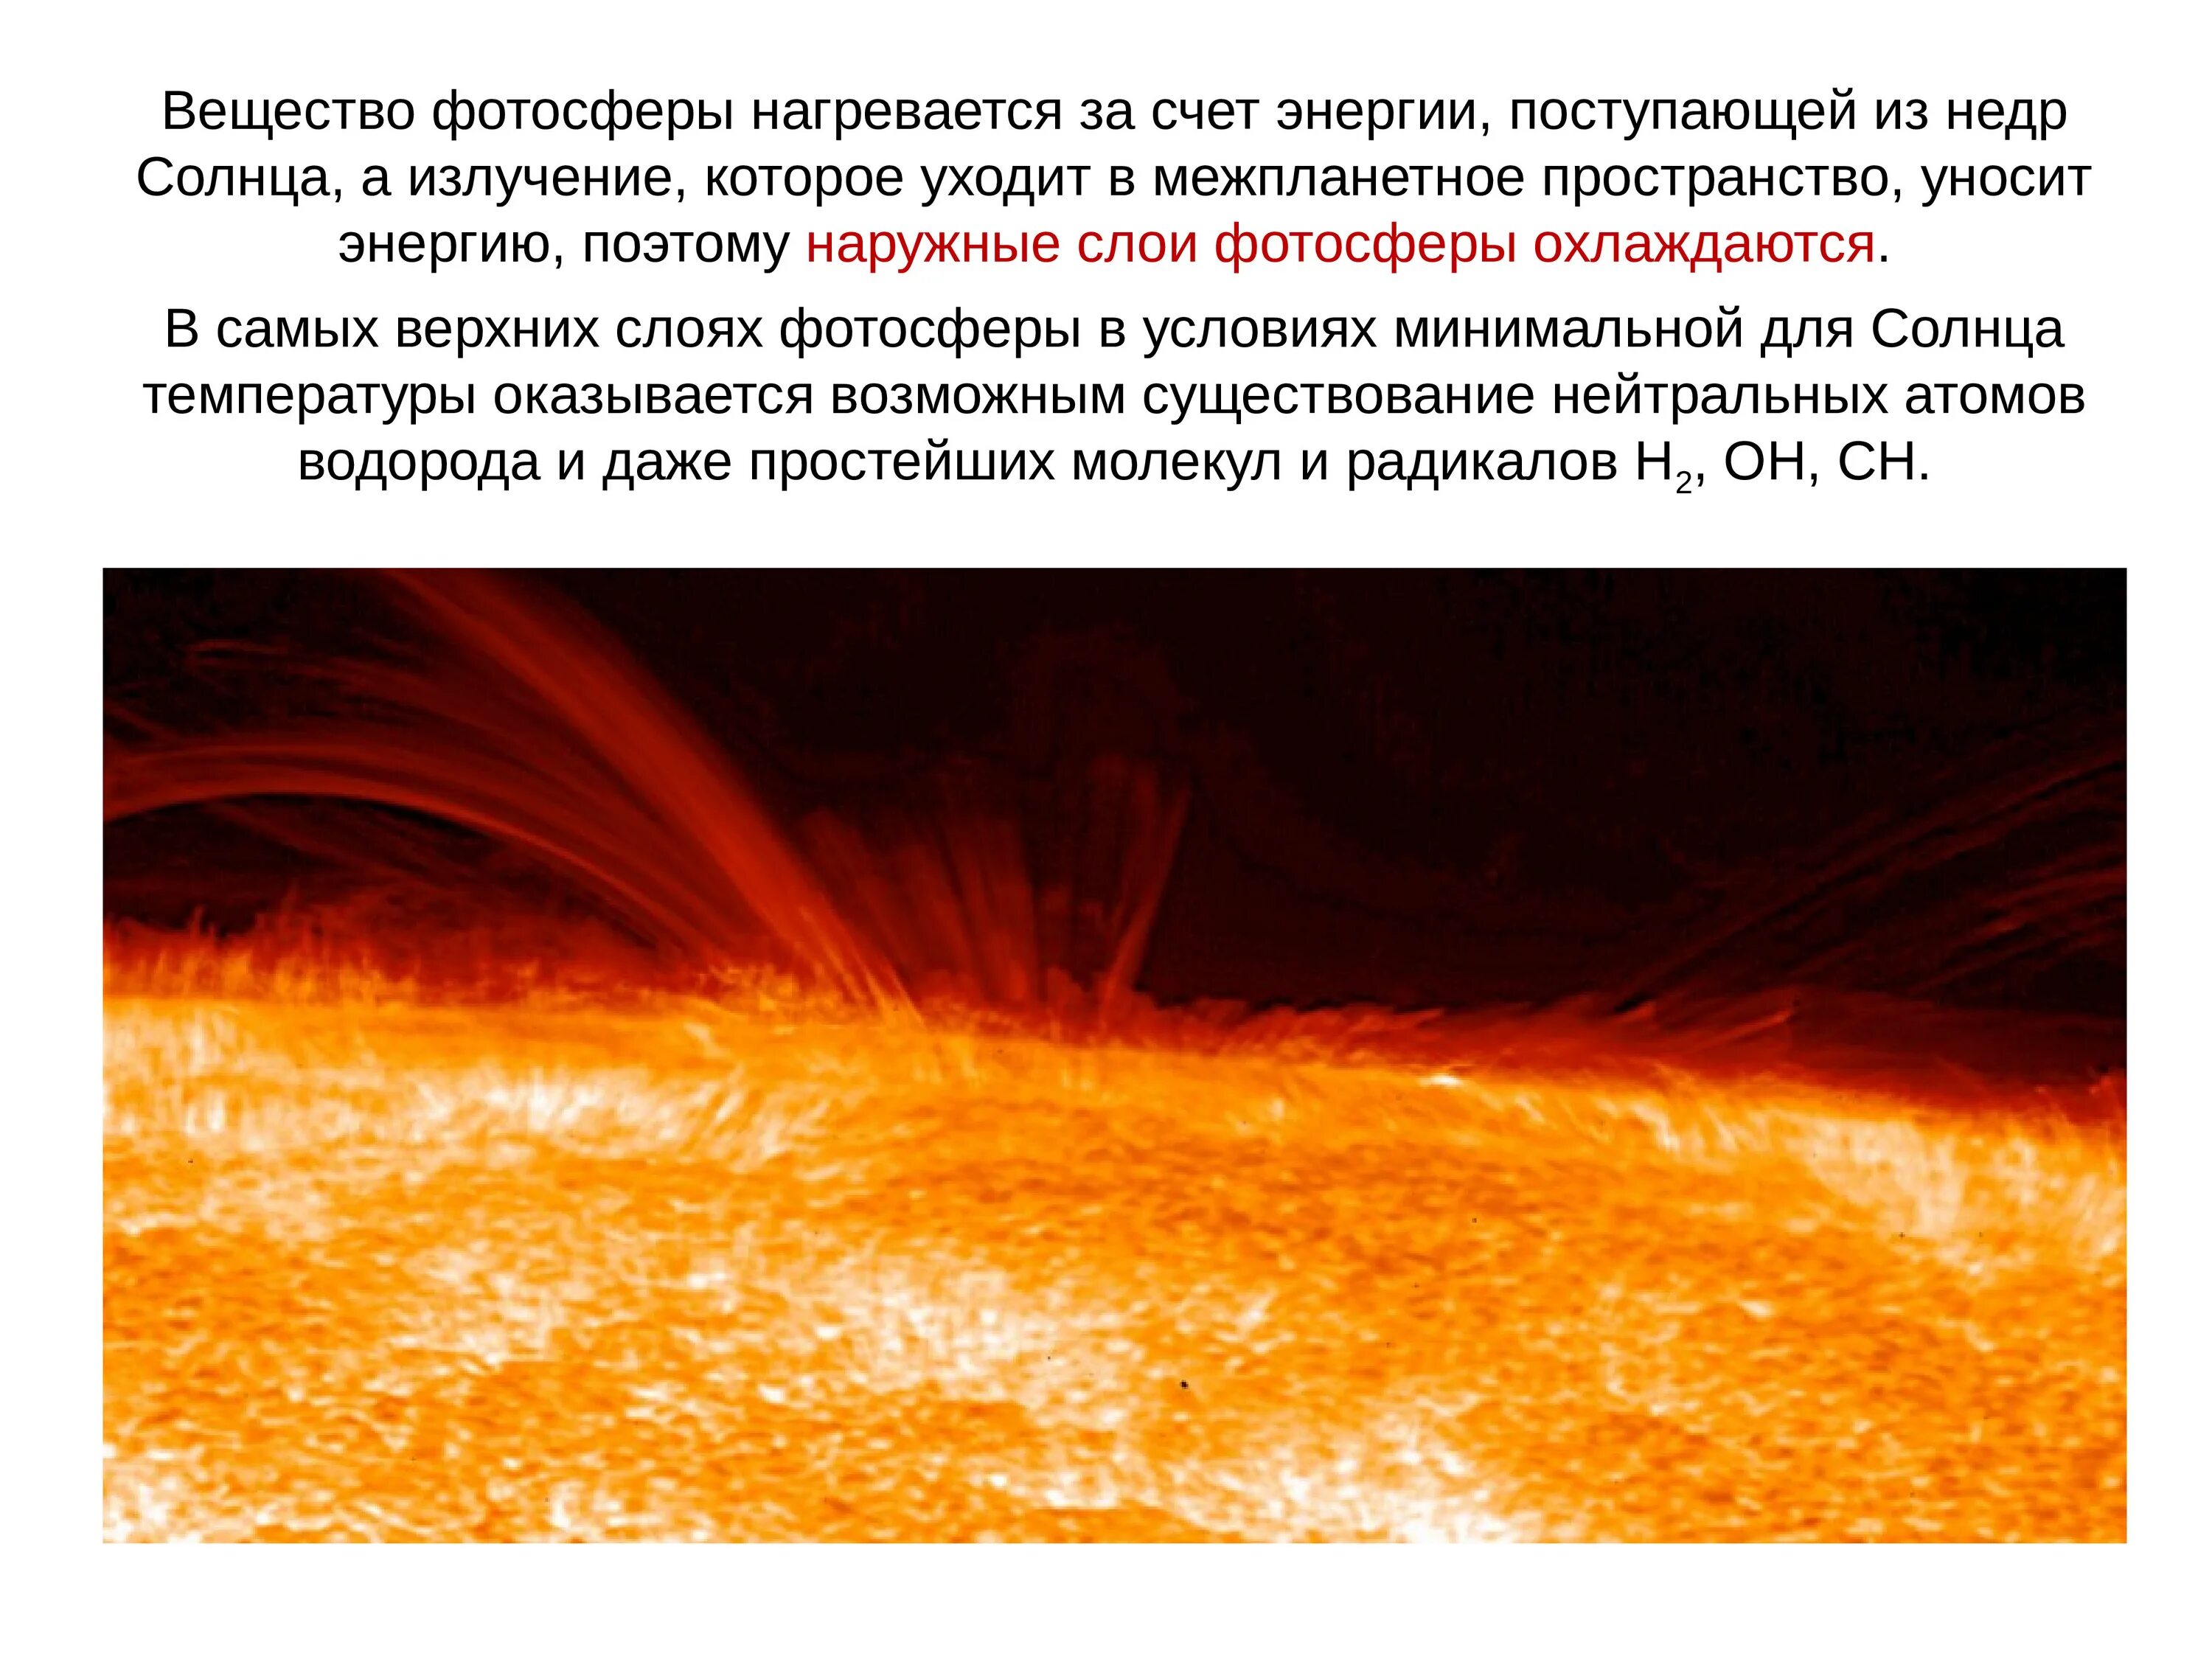 Фотосфера солнца. Атмосфера солнца. Слои солнца Фотосфера. Атмосфера солнца и Солнечная активность.